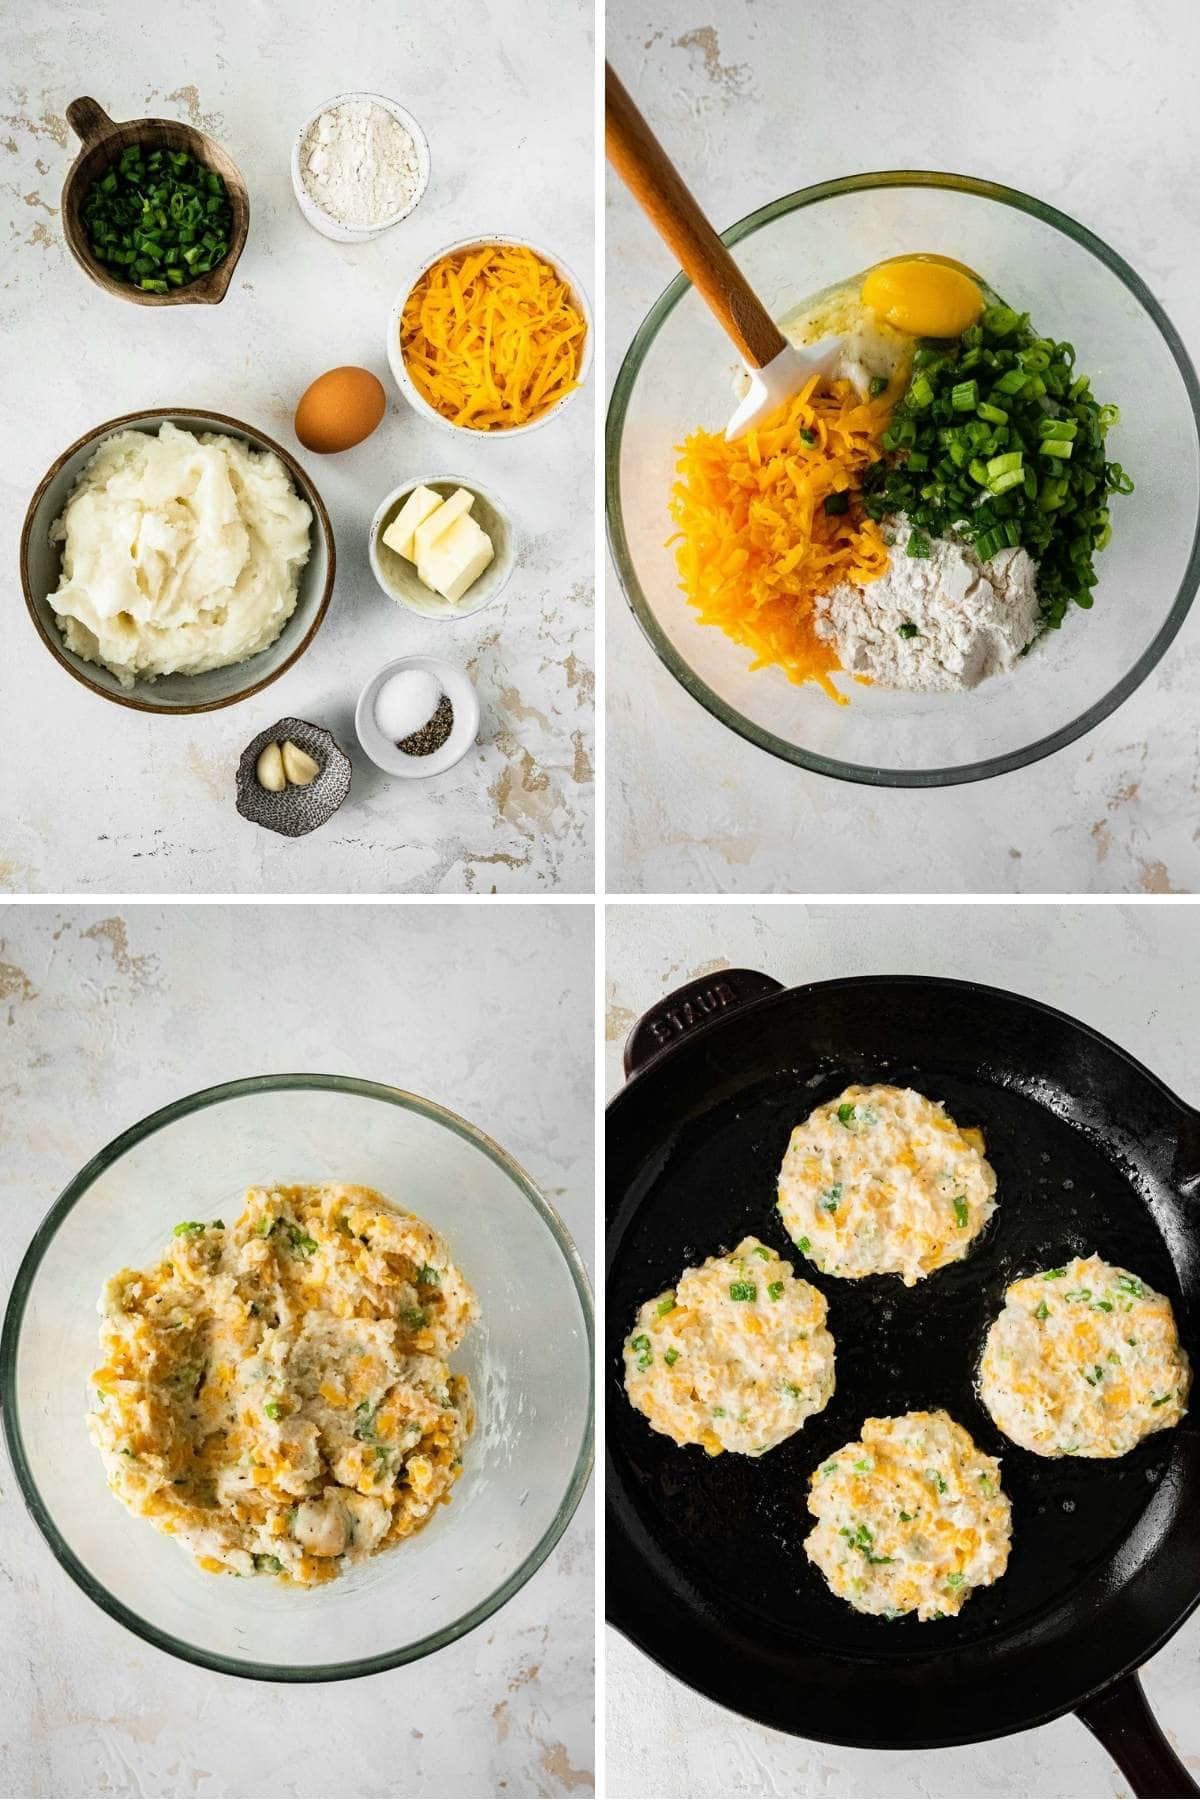 Mashed Potato Pancakes collage